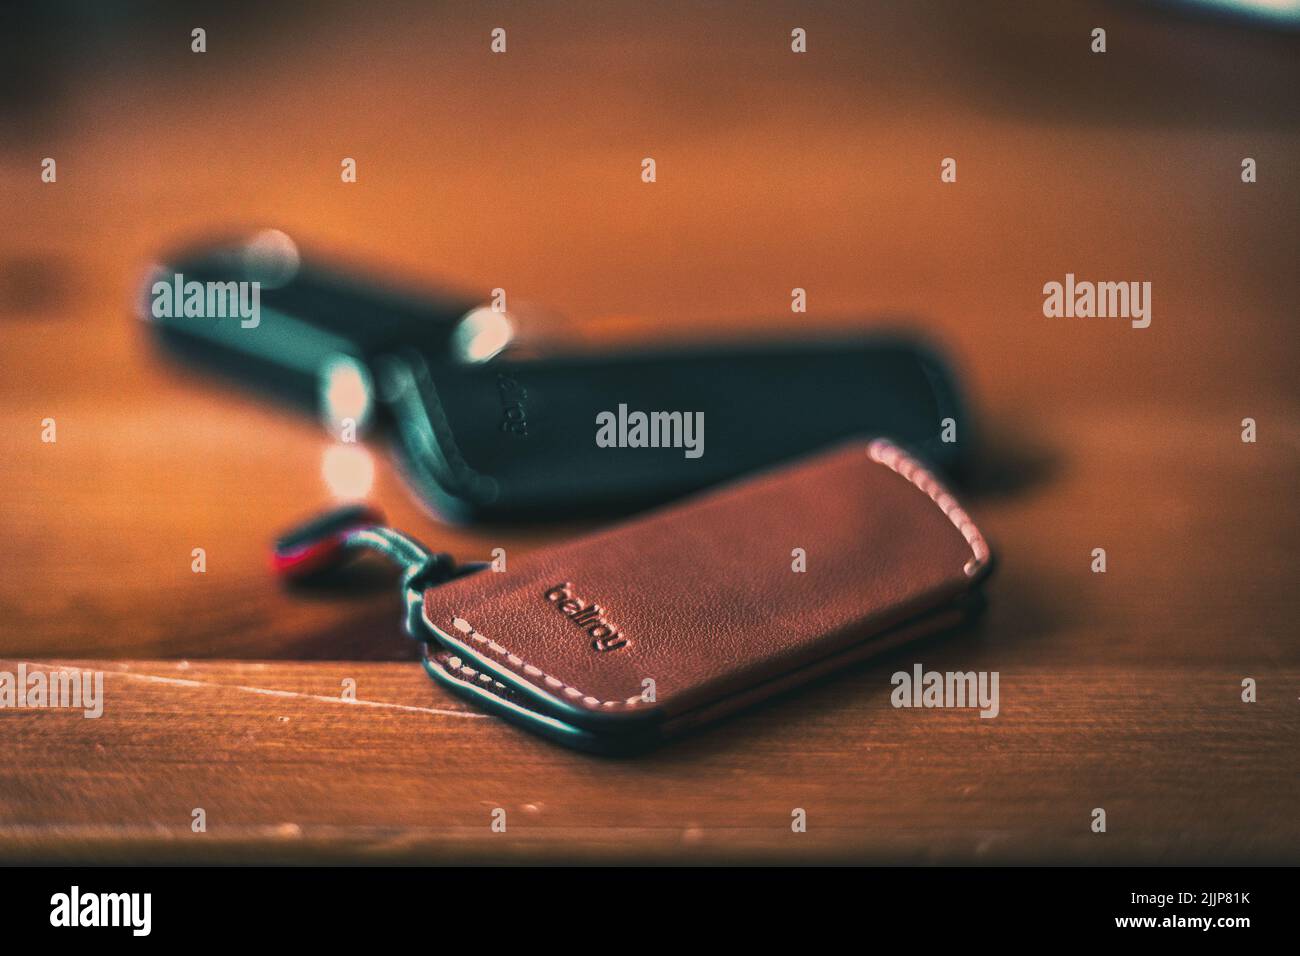 Un'immagine selettiva della fotografia del prodotto dei titolari di chiavi Bellroy. Foto Stock